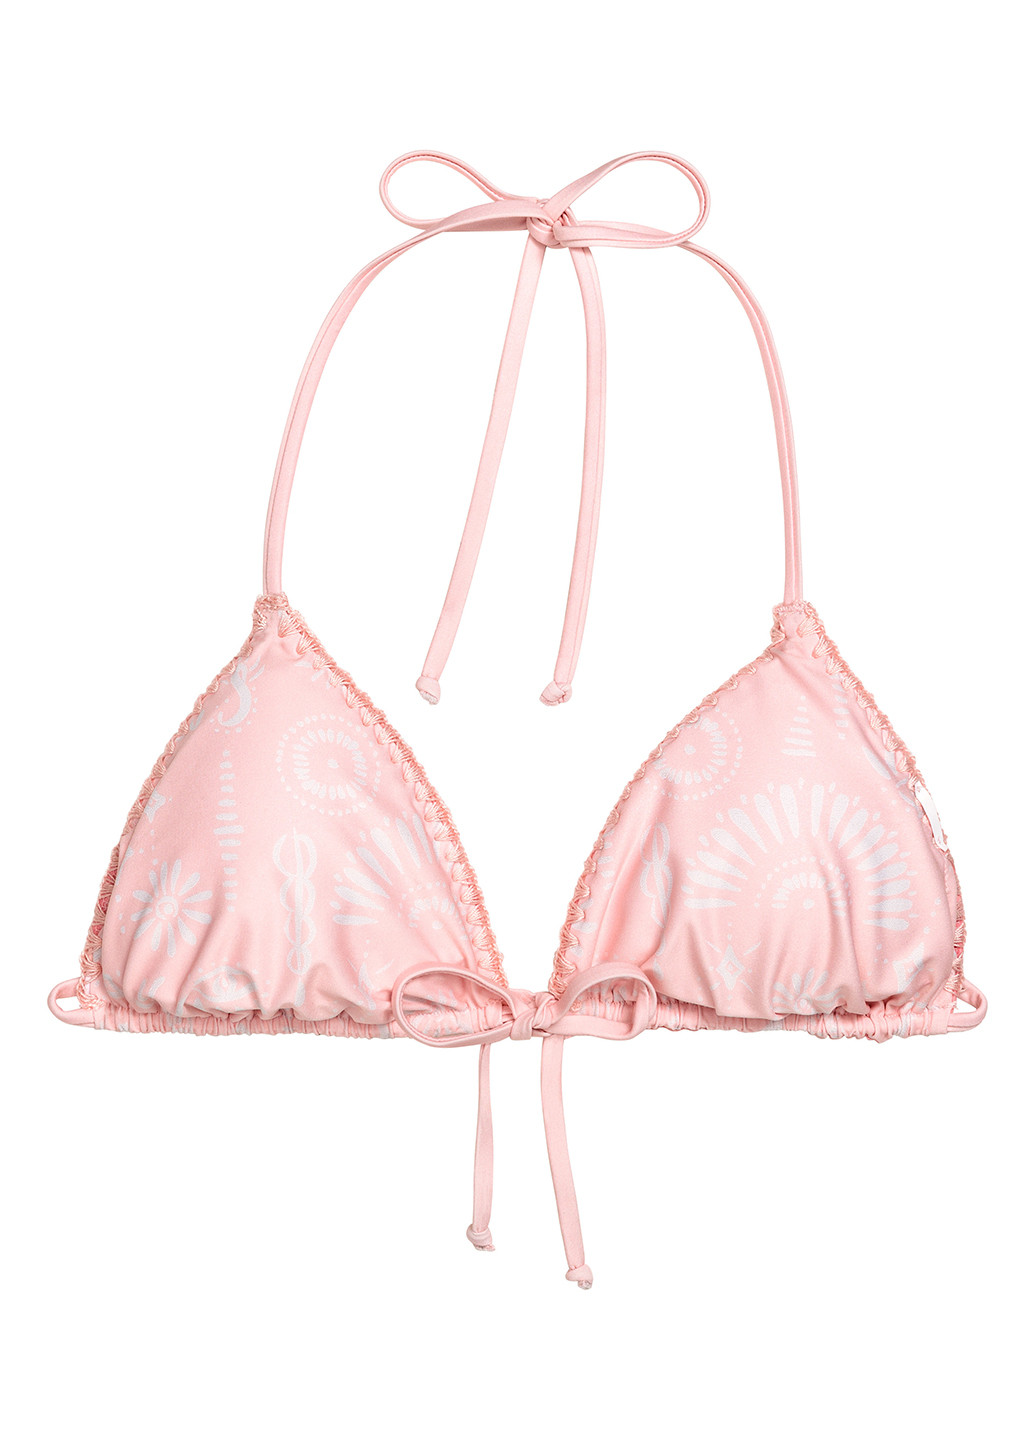 Купальный лиф H&M бикини рисунок розовый пляжный полиэстер